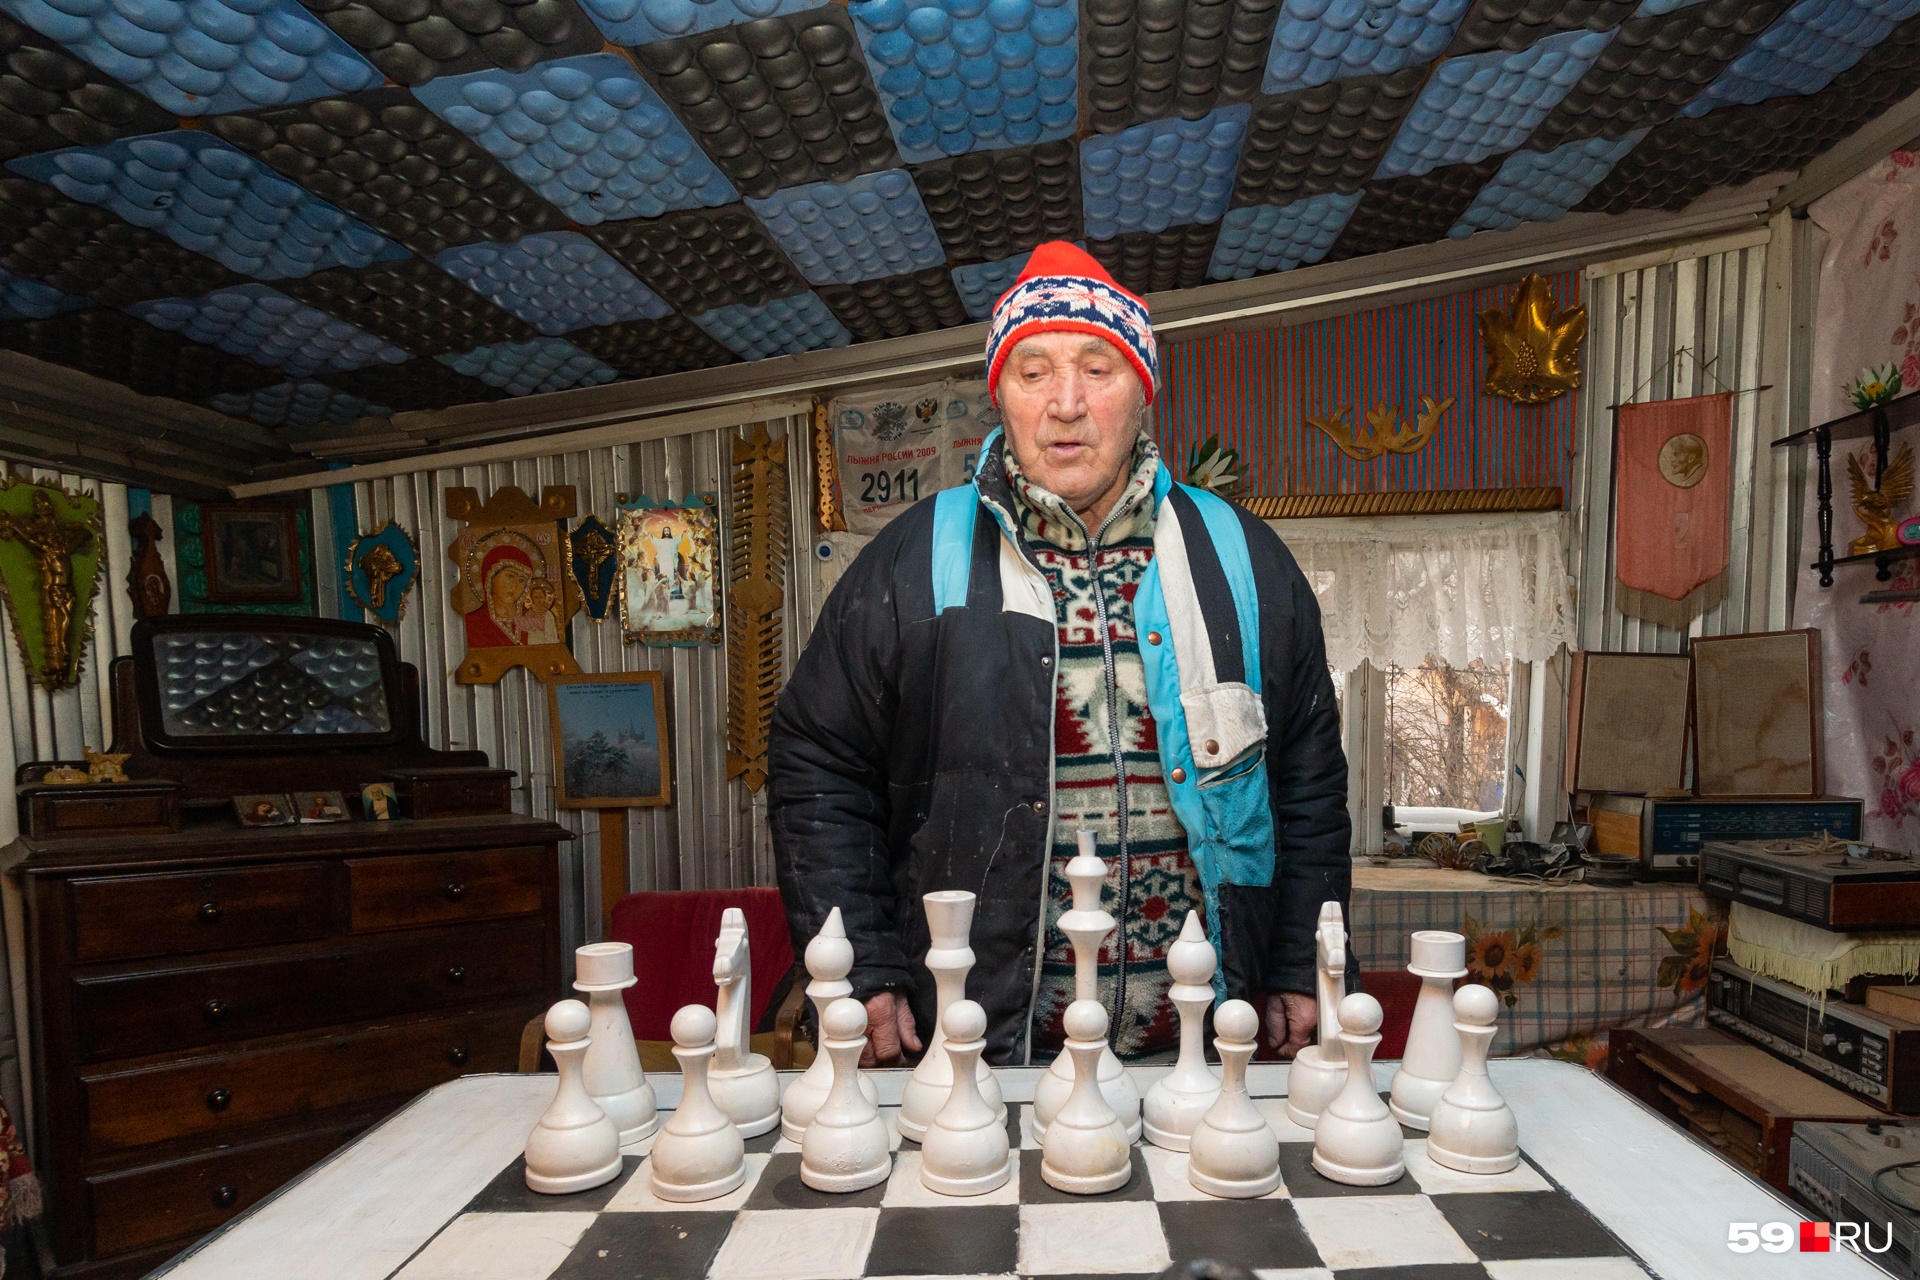 На досуге Владимир Павлович играет в шахматы. А еще в доме есть комната с бильярдом